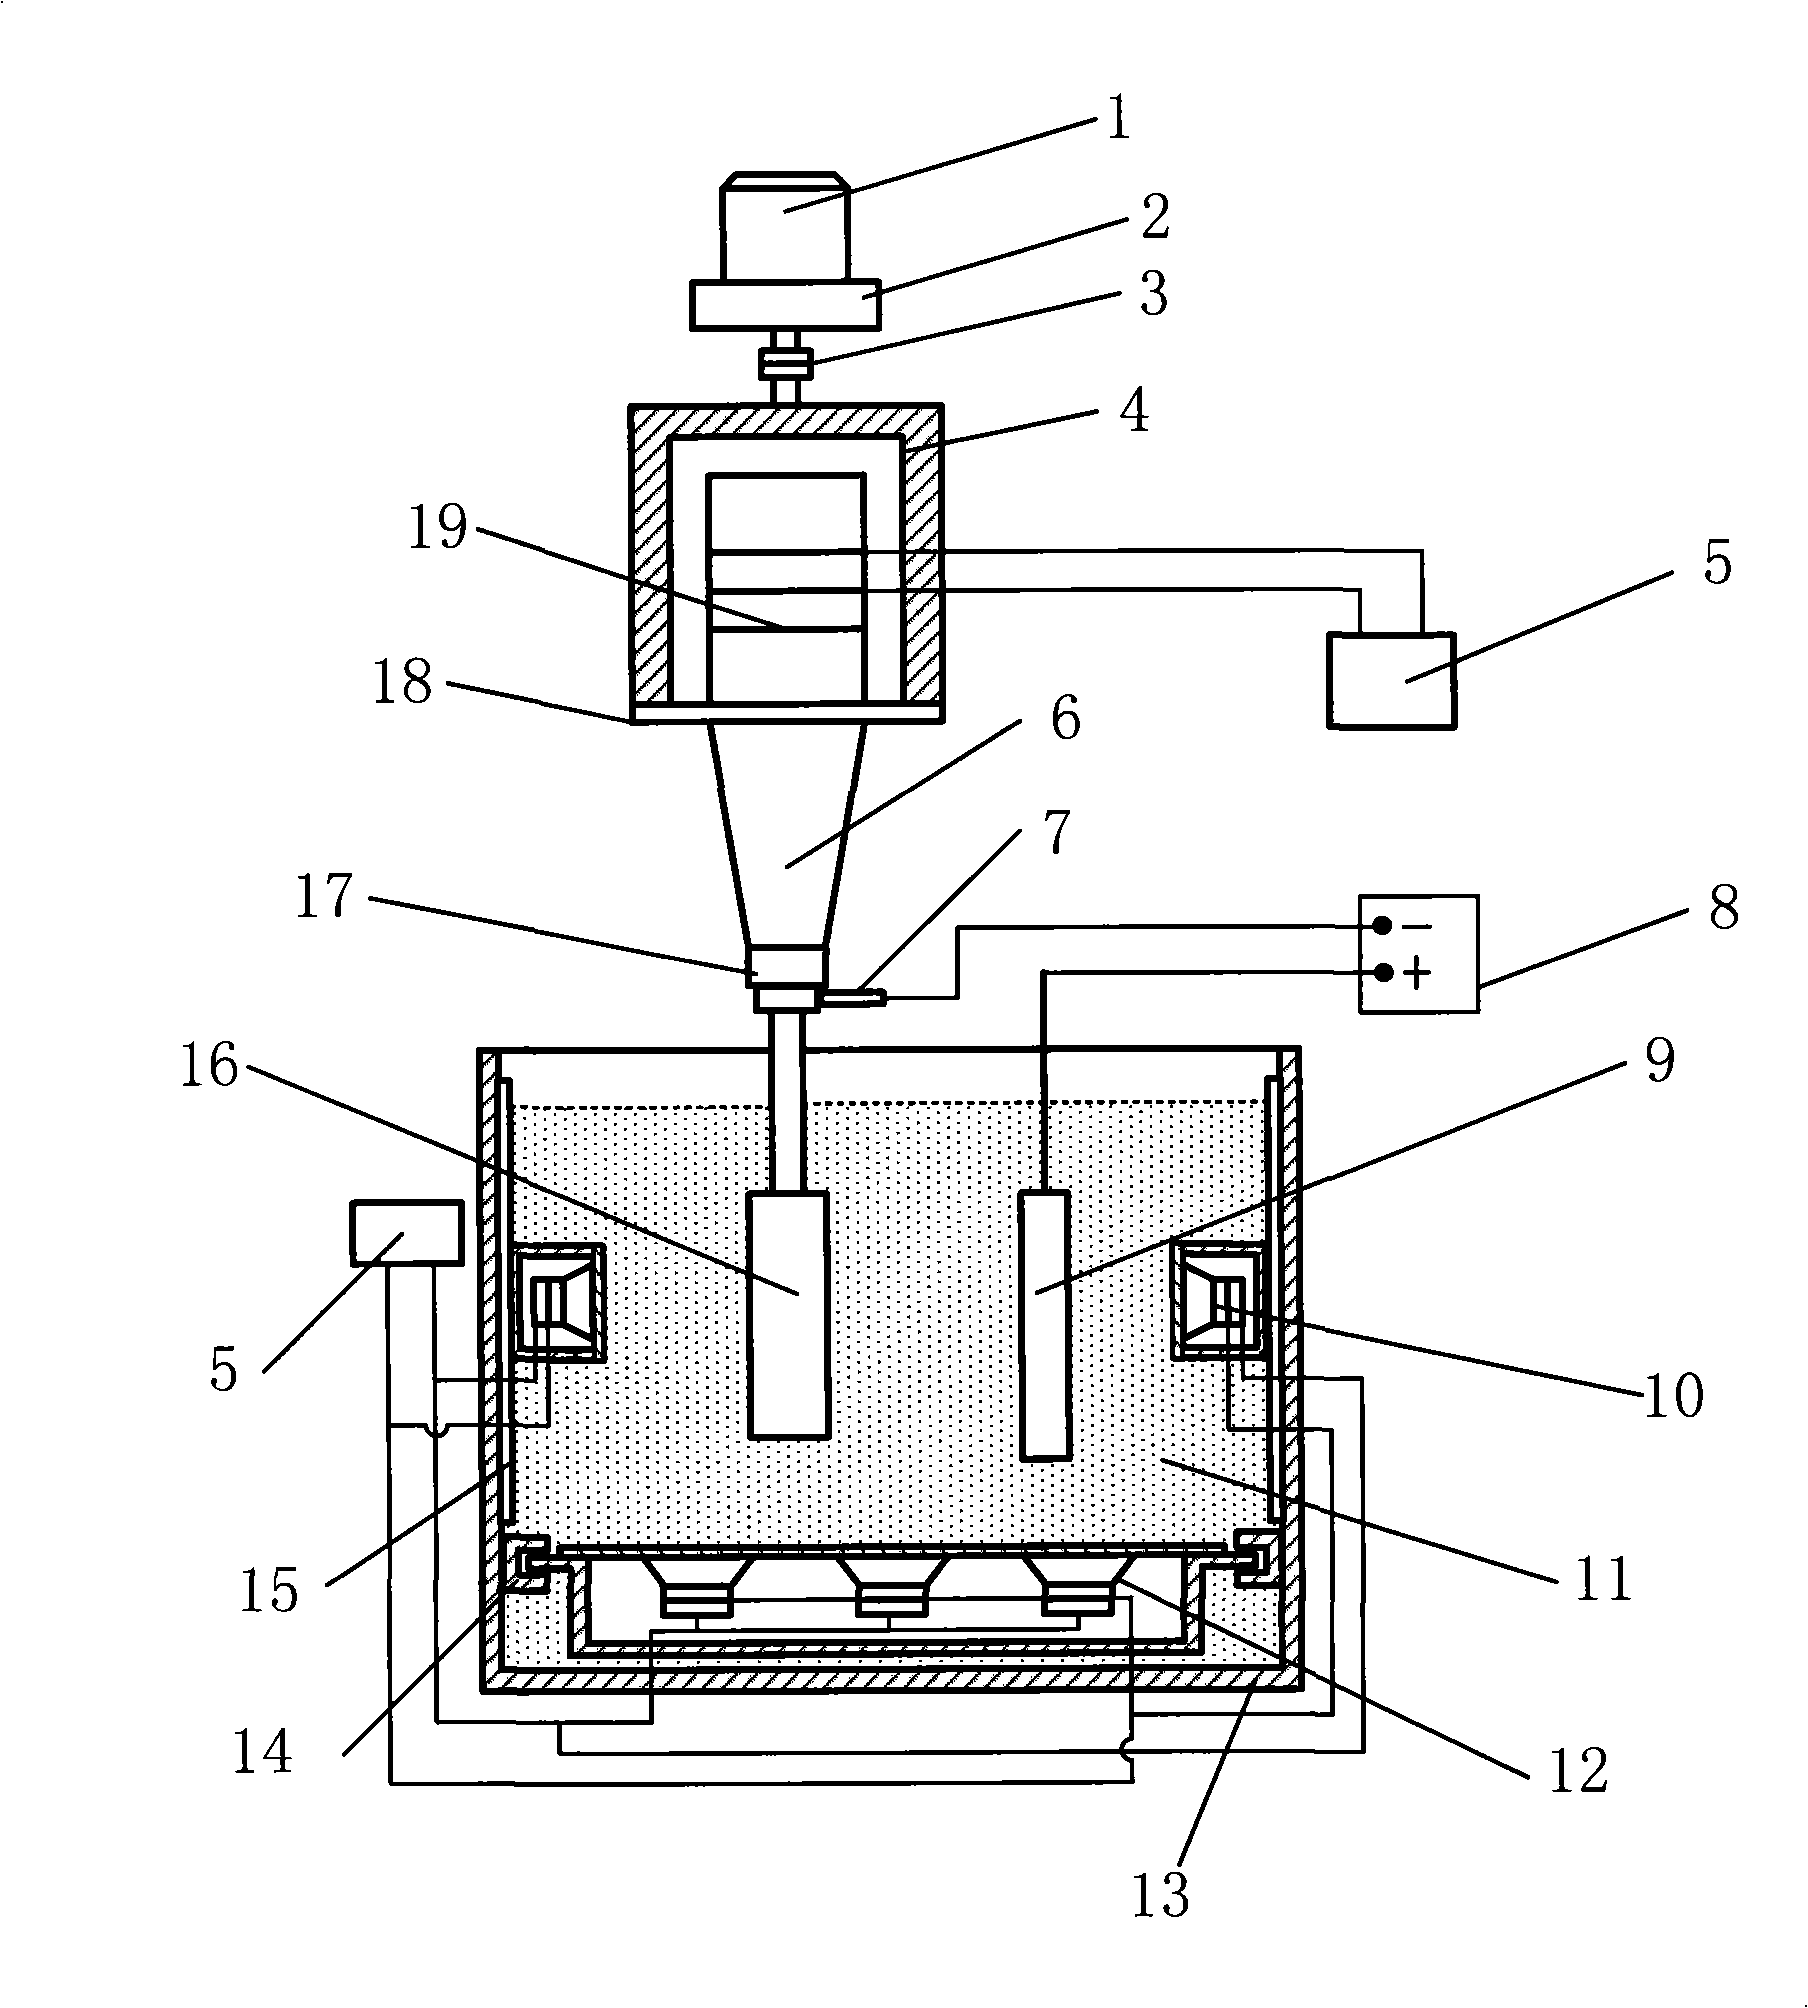 Electroforming composite processing apparatus and electroforming tank used by the apparatus